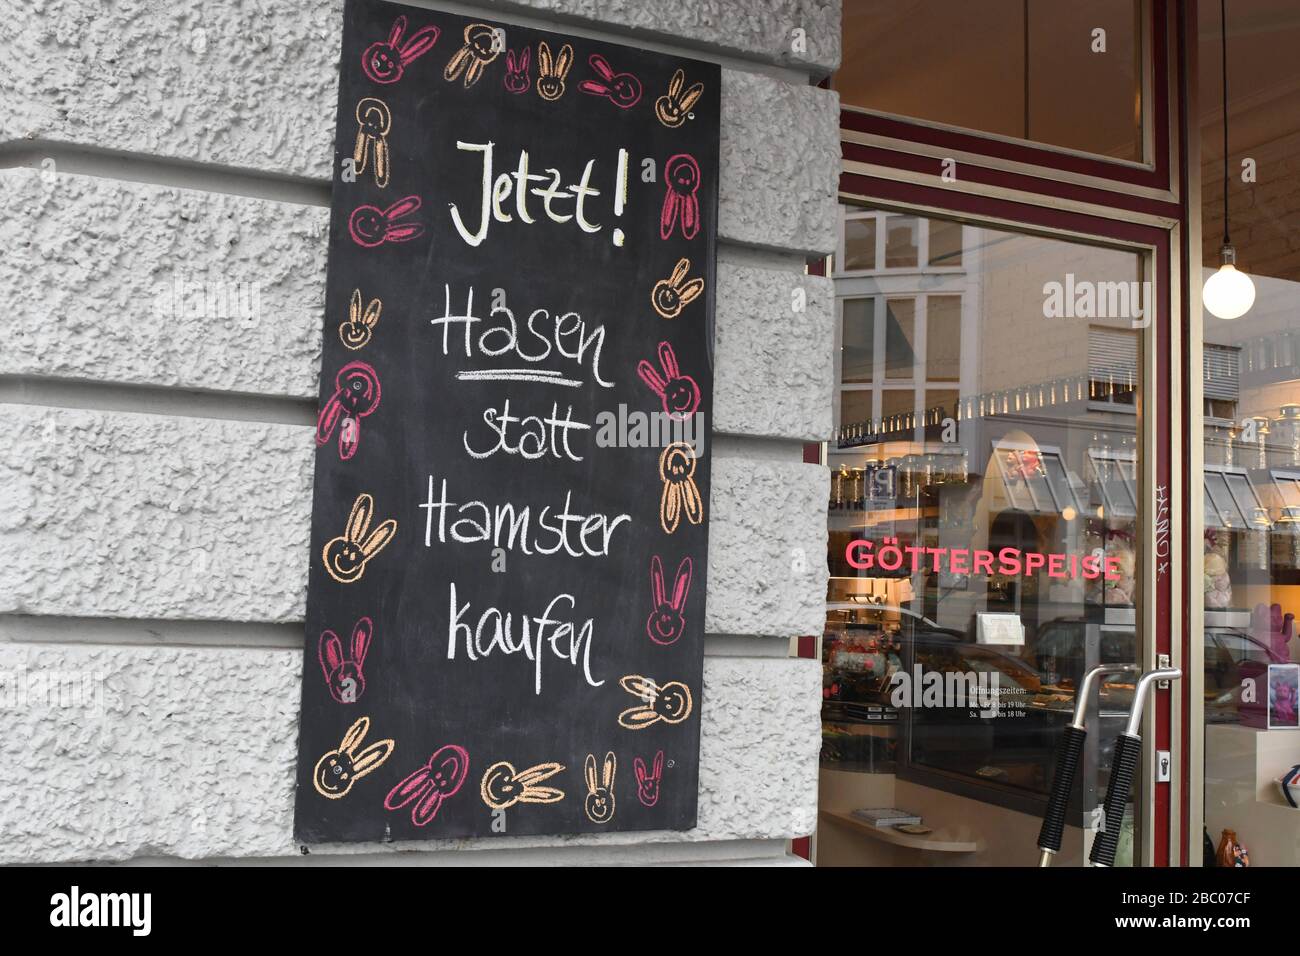 Die Chocolaterie "Götterspise" an der Jahnstraße 30 im Glockenbachviertel propagiert vor Ostern statt kornonbezogener Hamstereinkäufe Käufe. [Automatisierte Übersetzung] Stockfoto